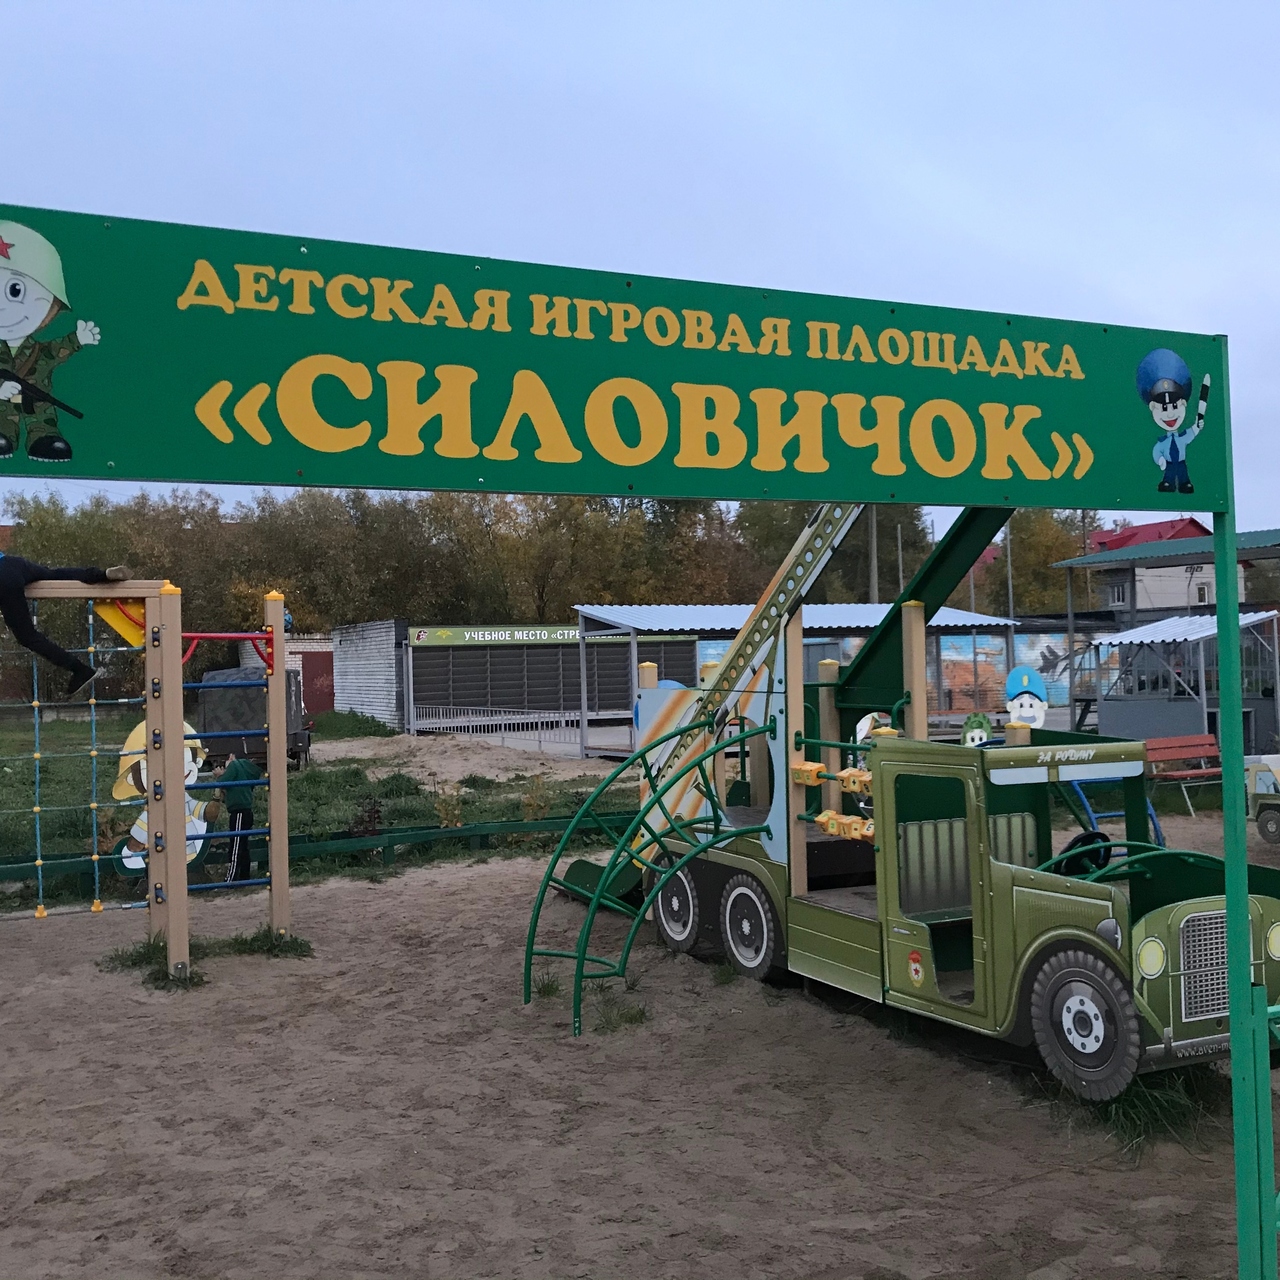 В российском городе появилась детская площадка «Силовичок»: Город: Среда  обитания: Lenta.ru